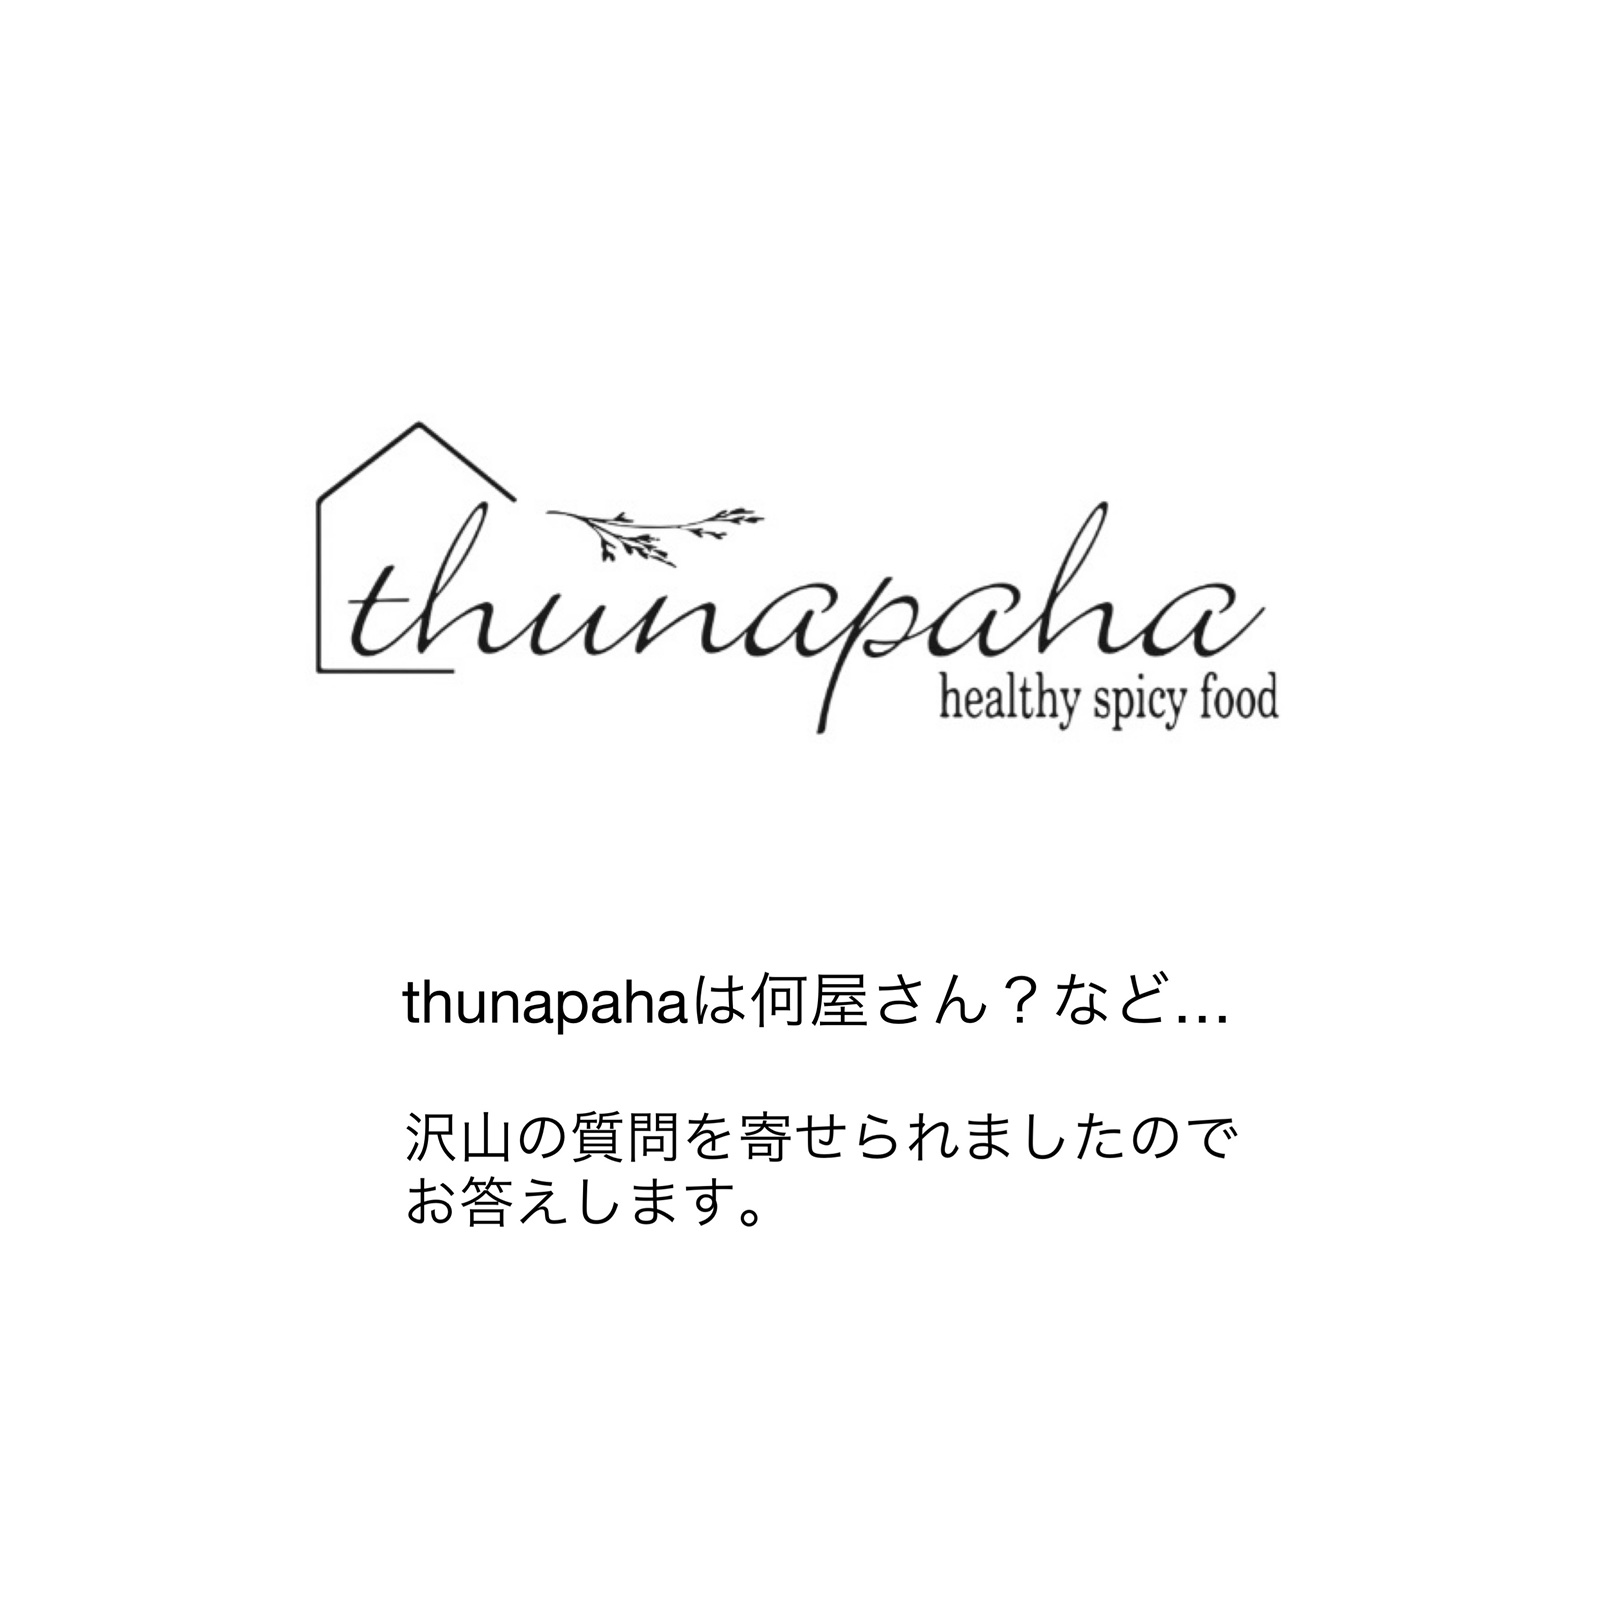 Thunapahaは、なんなのか？というご質問にお答えします！